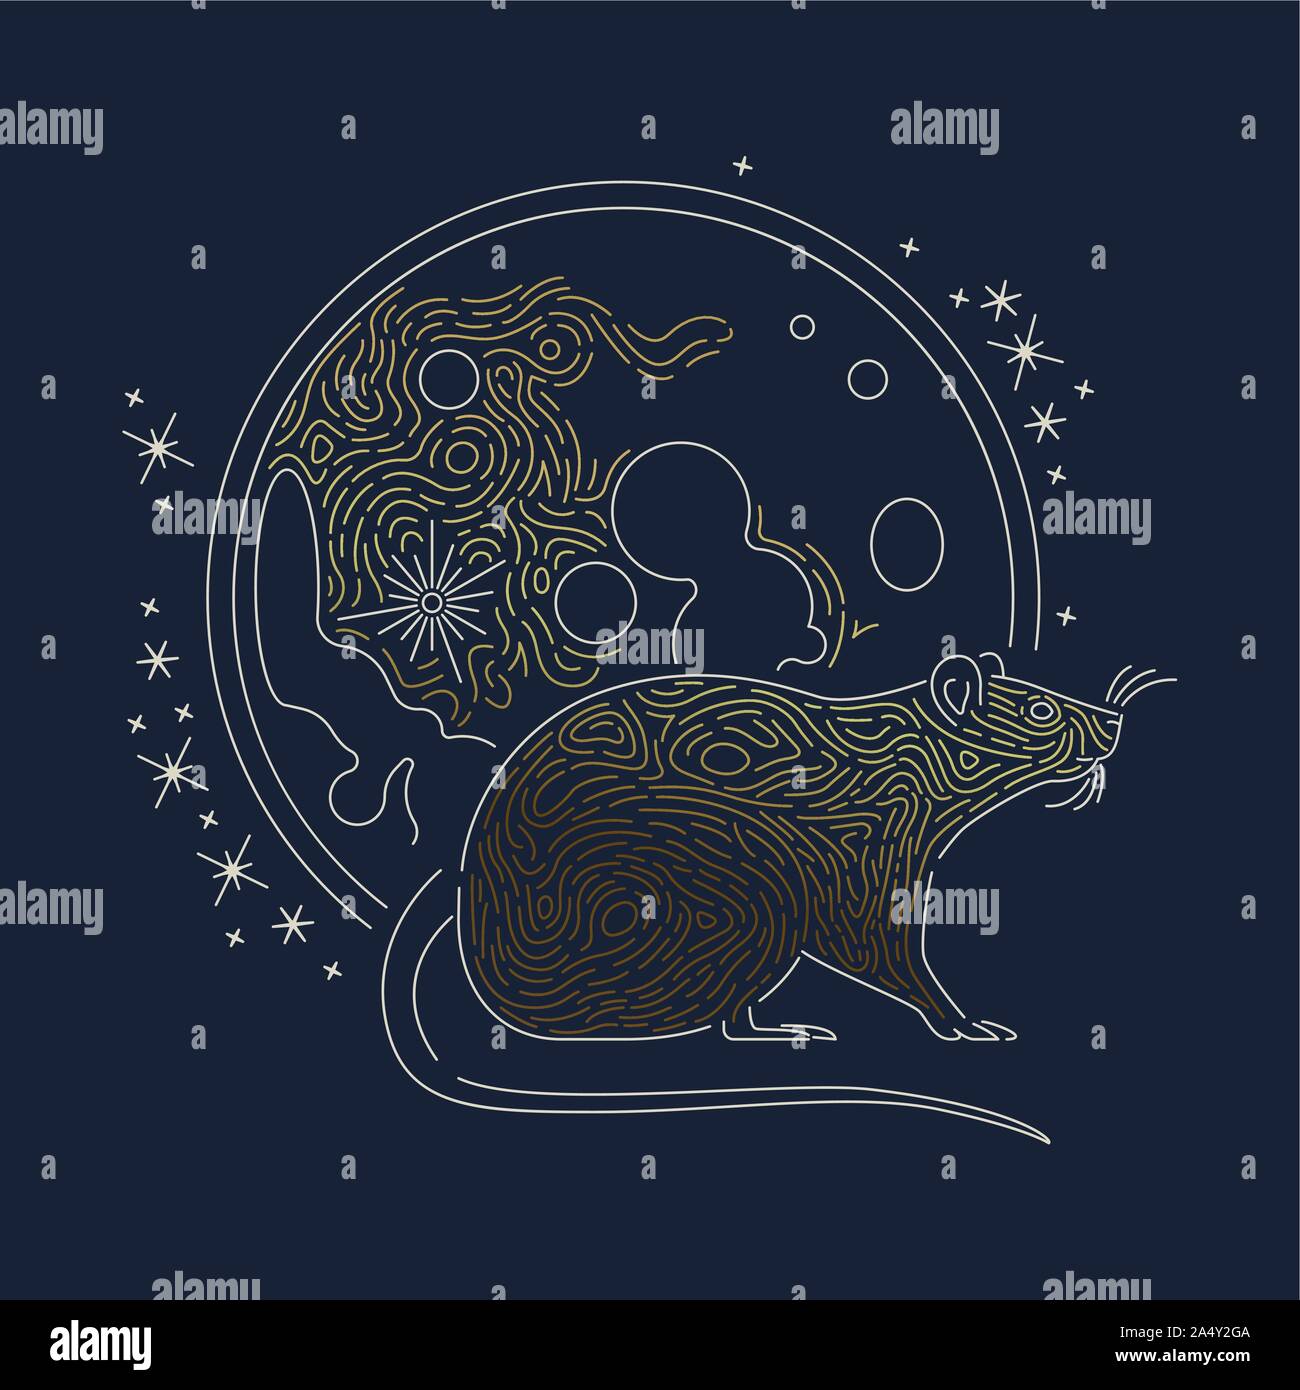 Ratte Tier Abbildung mit Luxus gold Mond in modernen Umrisse Stil. Astrologie Design für das chinesische Neujahr oder Horoskop Konzept. Stock Vektor